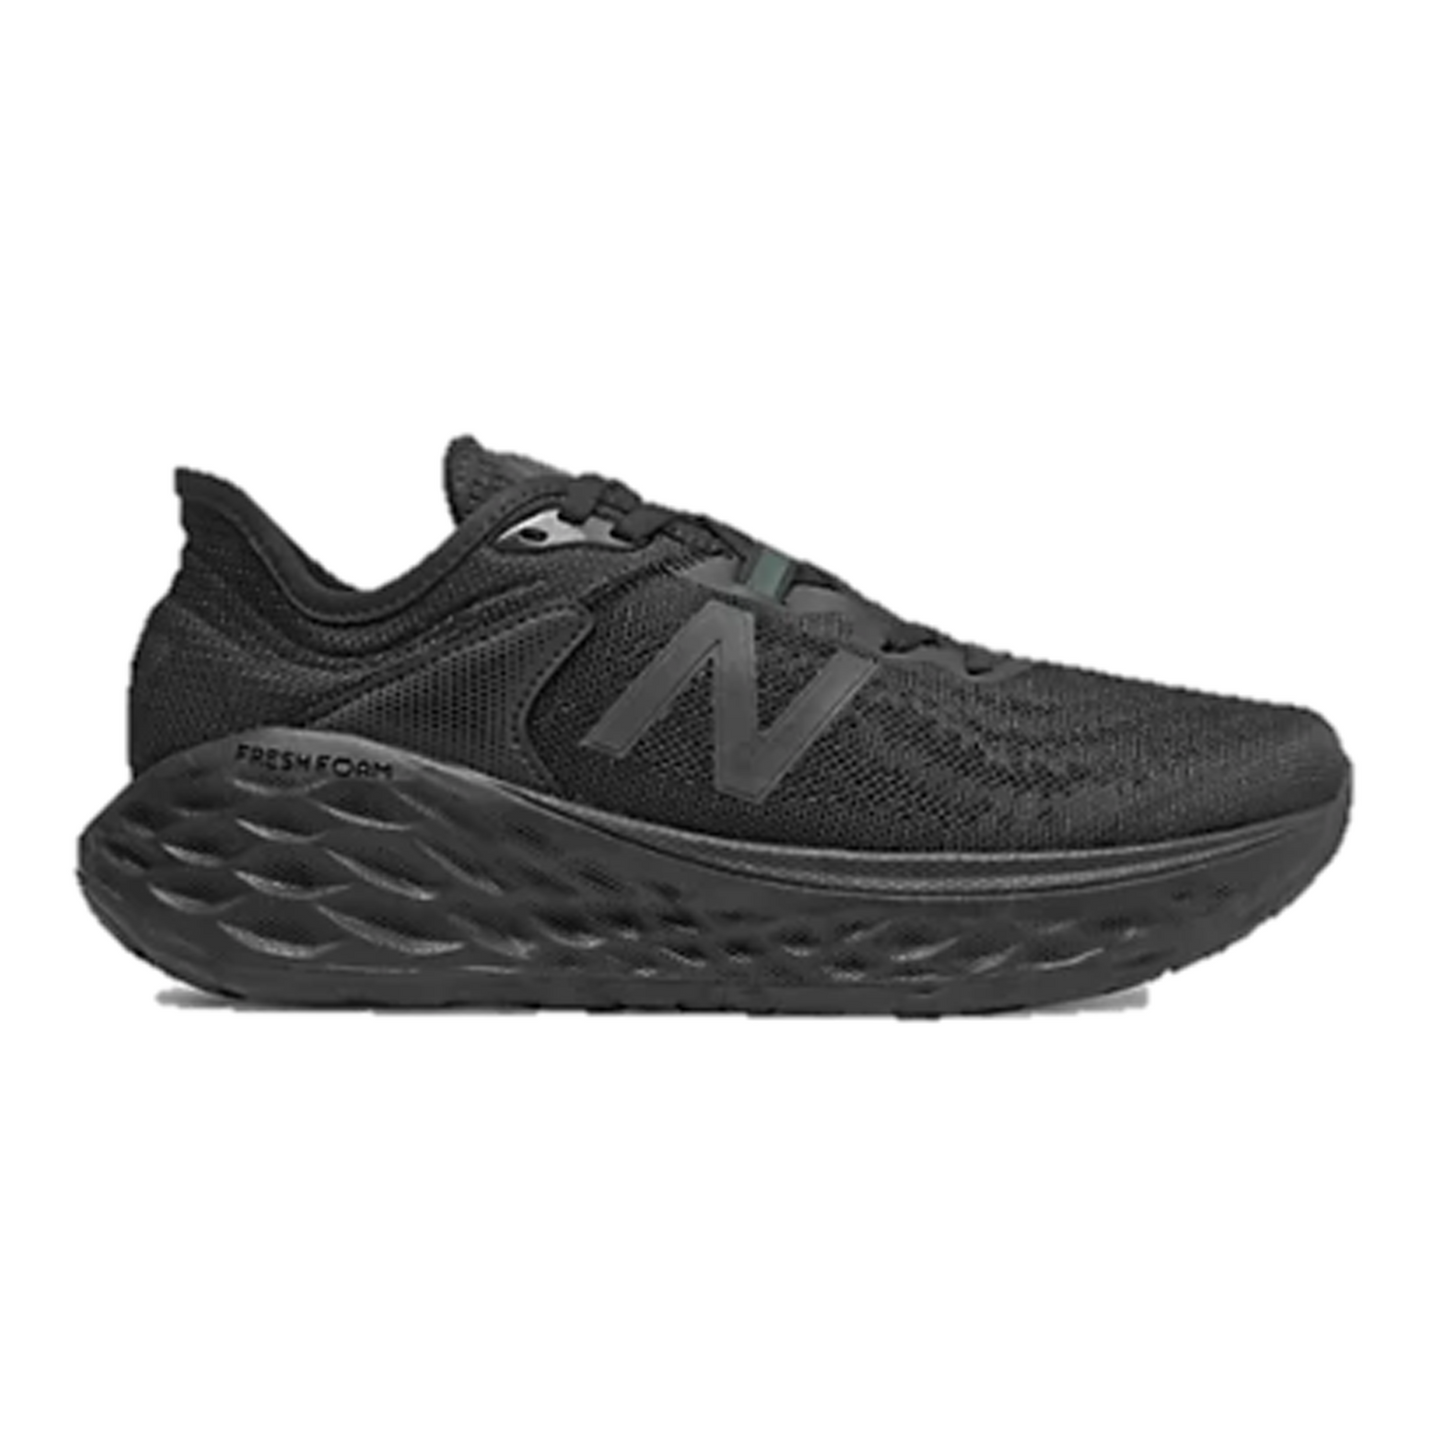 Women's New Balance More V2 running shoe, in colour all black.  